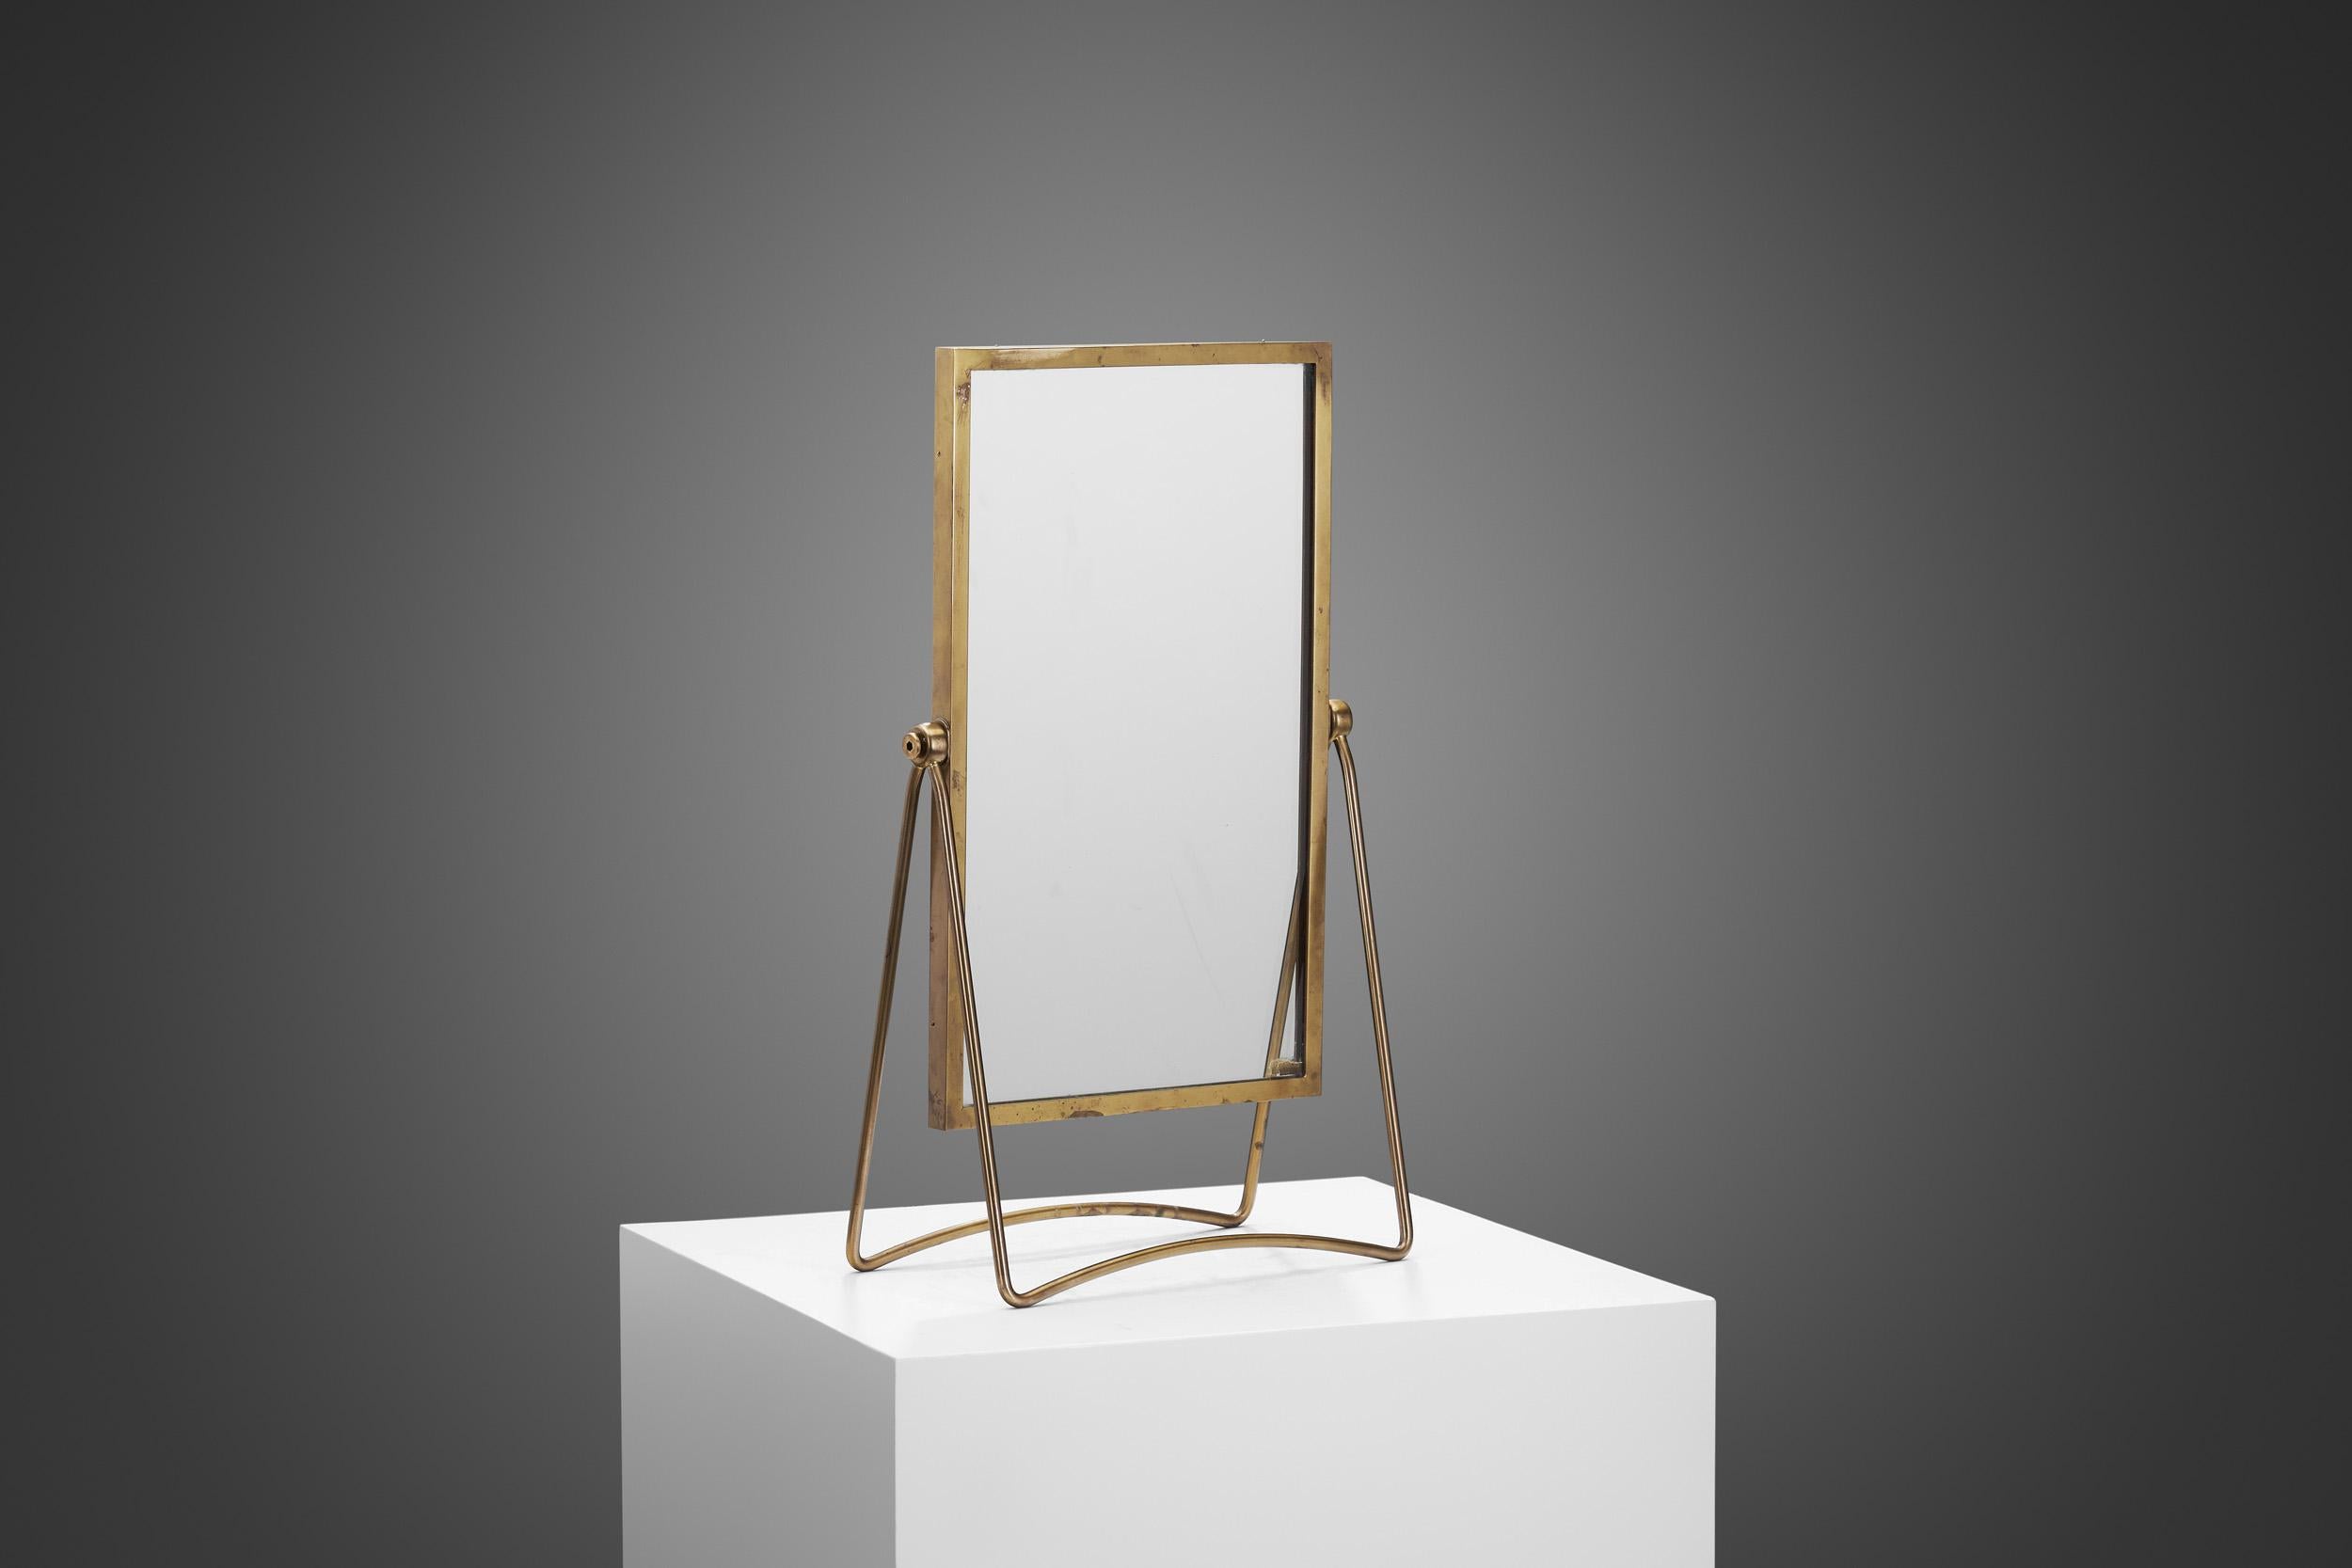 Spiegel sind vielseitige Einrichtungsgegenstände mit mehreren Funktionen und Vorteilen: Sie schaffen Tiefe, erhöhen die Lichtabdeckung und verleihen jedem Raum eine besondere Note. Tischspiegel vereinen Funktion und Form und bieten nützliche